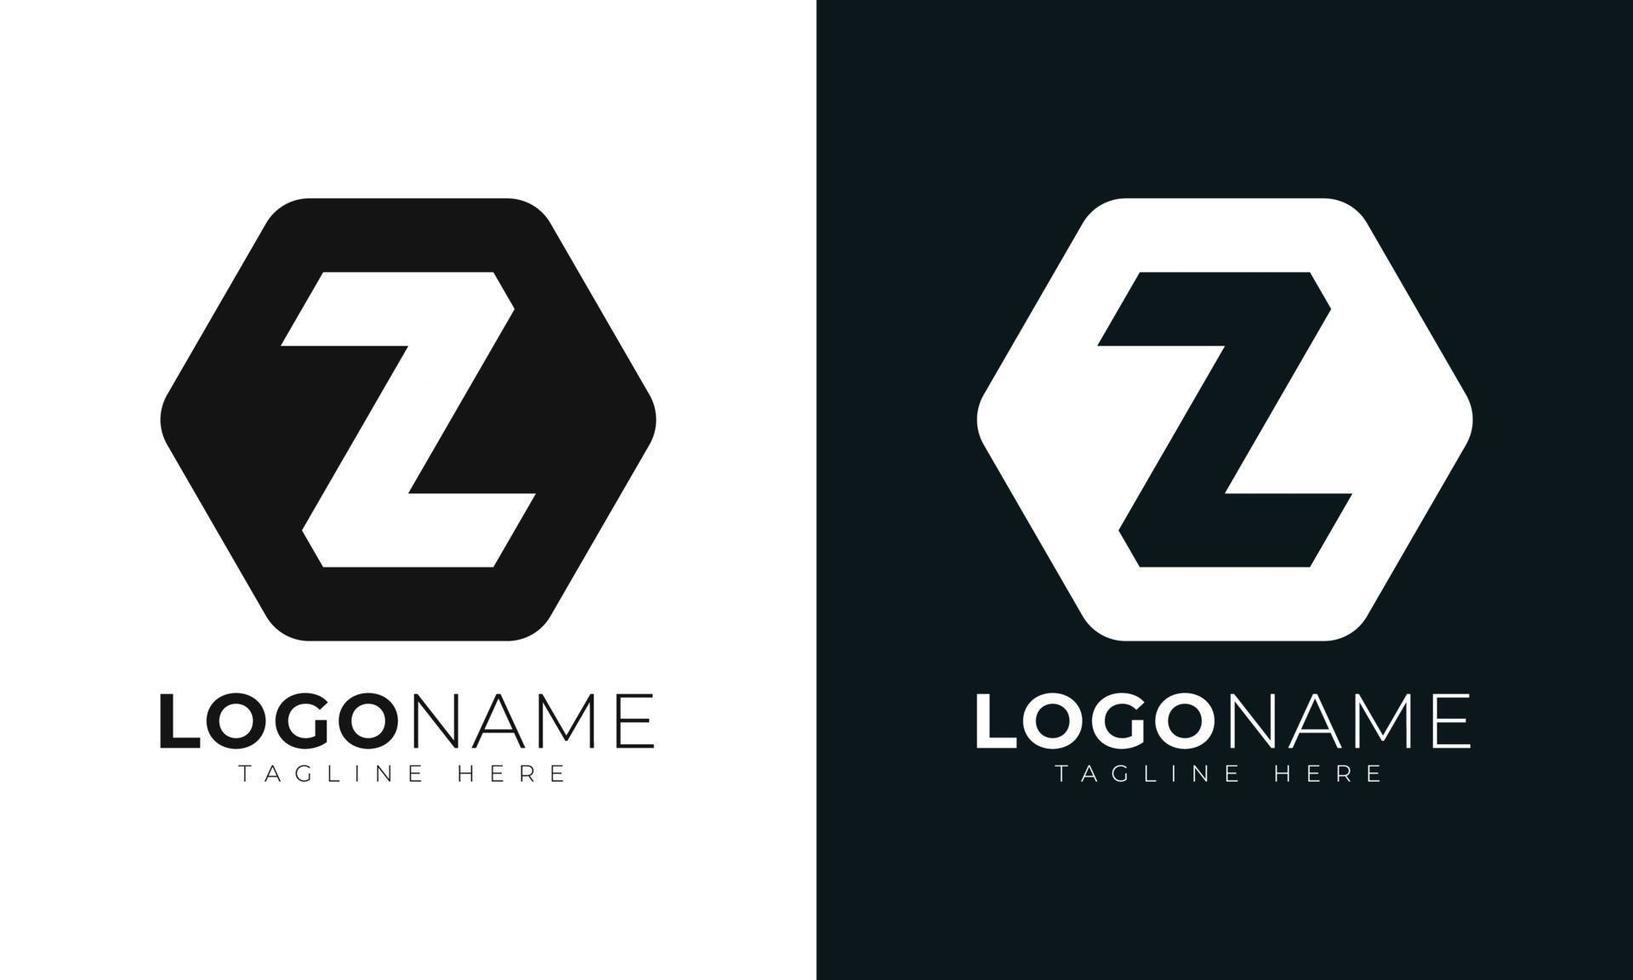 modelo de design de vetor de logotipo de letra inicial z. com formato hexagonal. estilo poligonal.